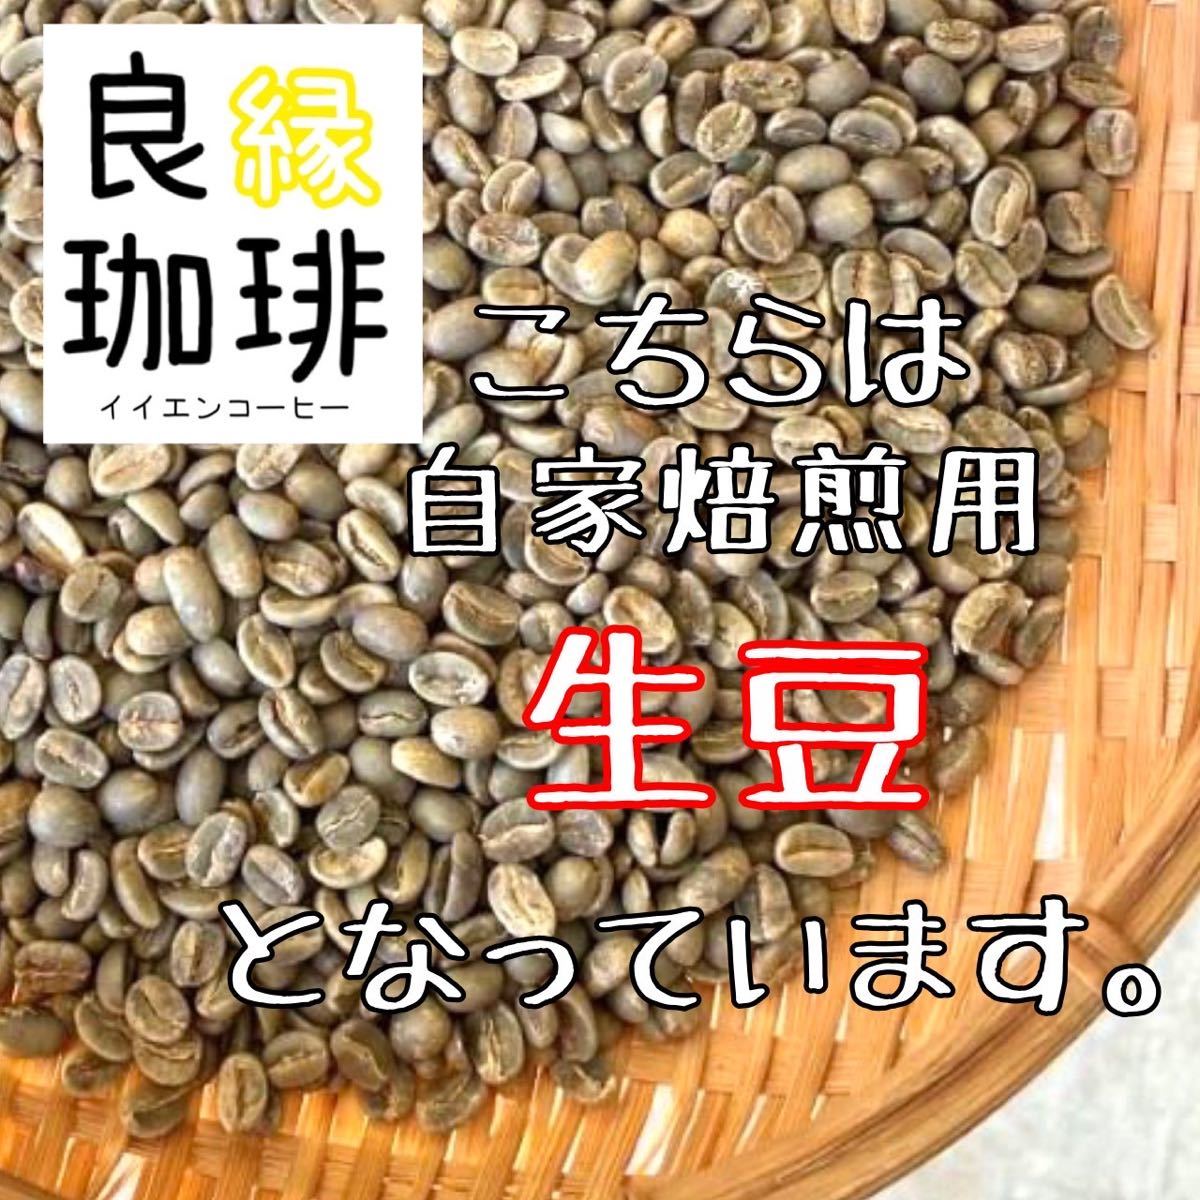 生豆 ブラジル クィーンショコラ Qグレード 800g コーヒー豆 珈琲豆 coffee green beans_画像3